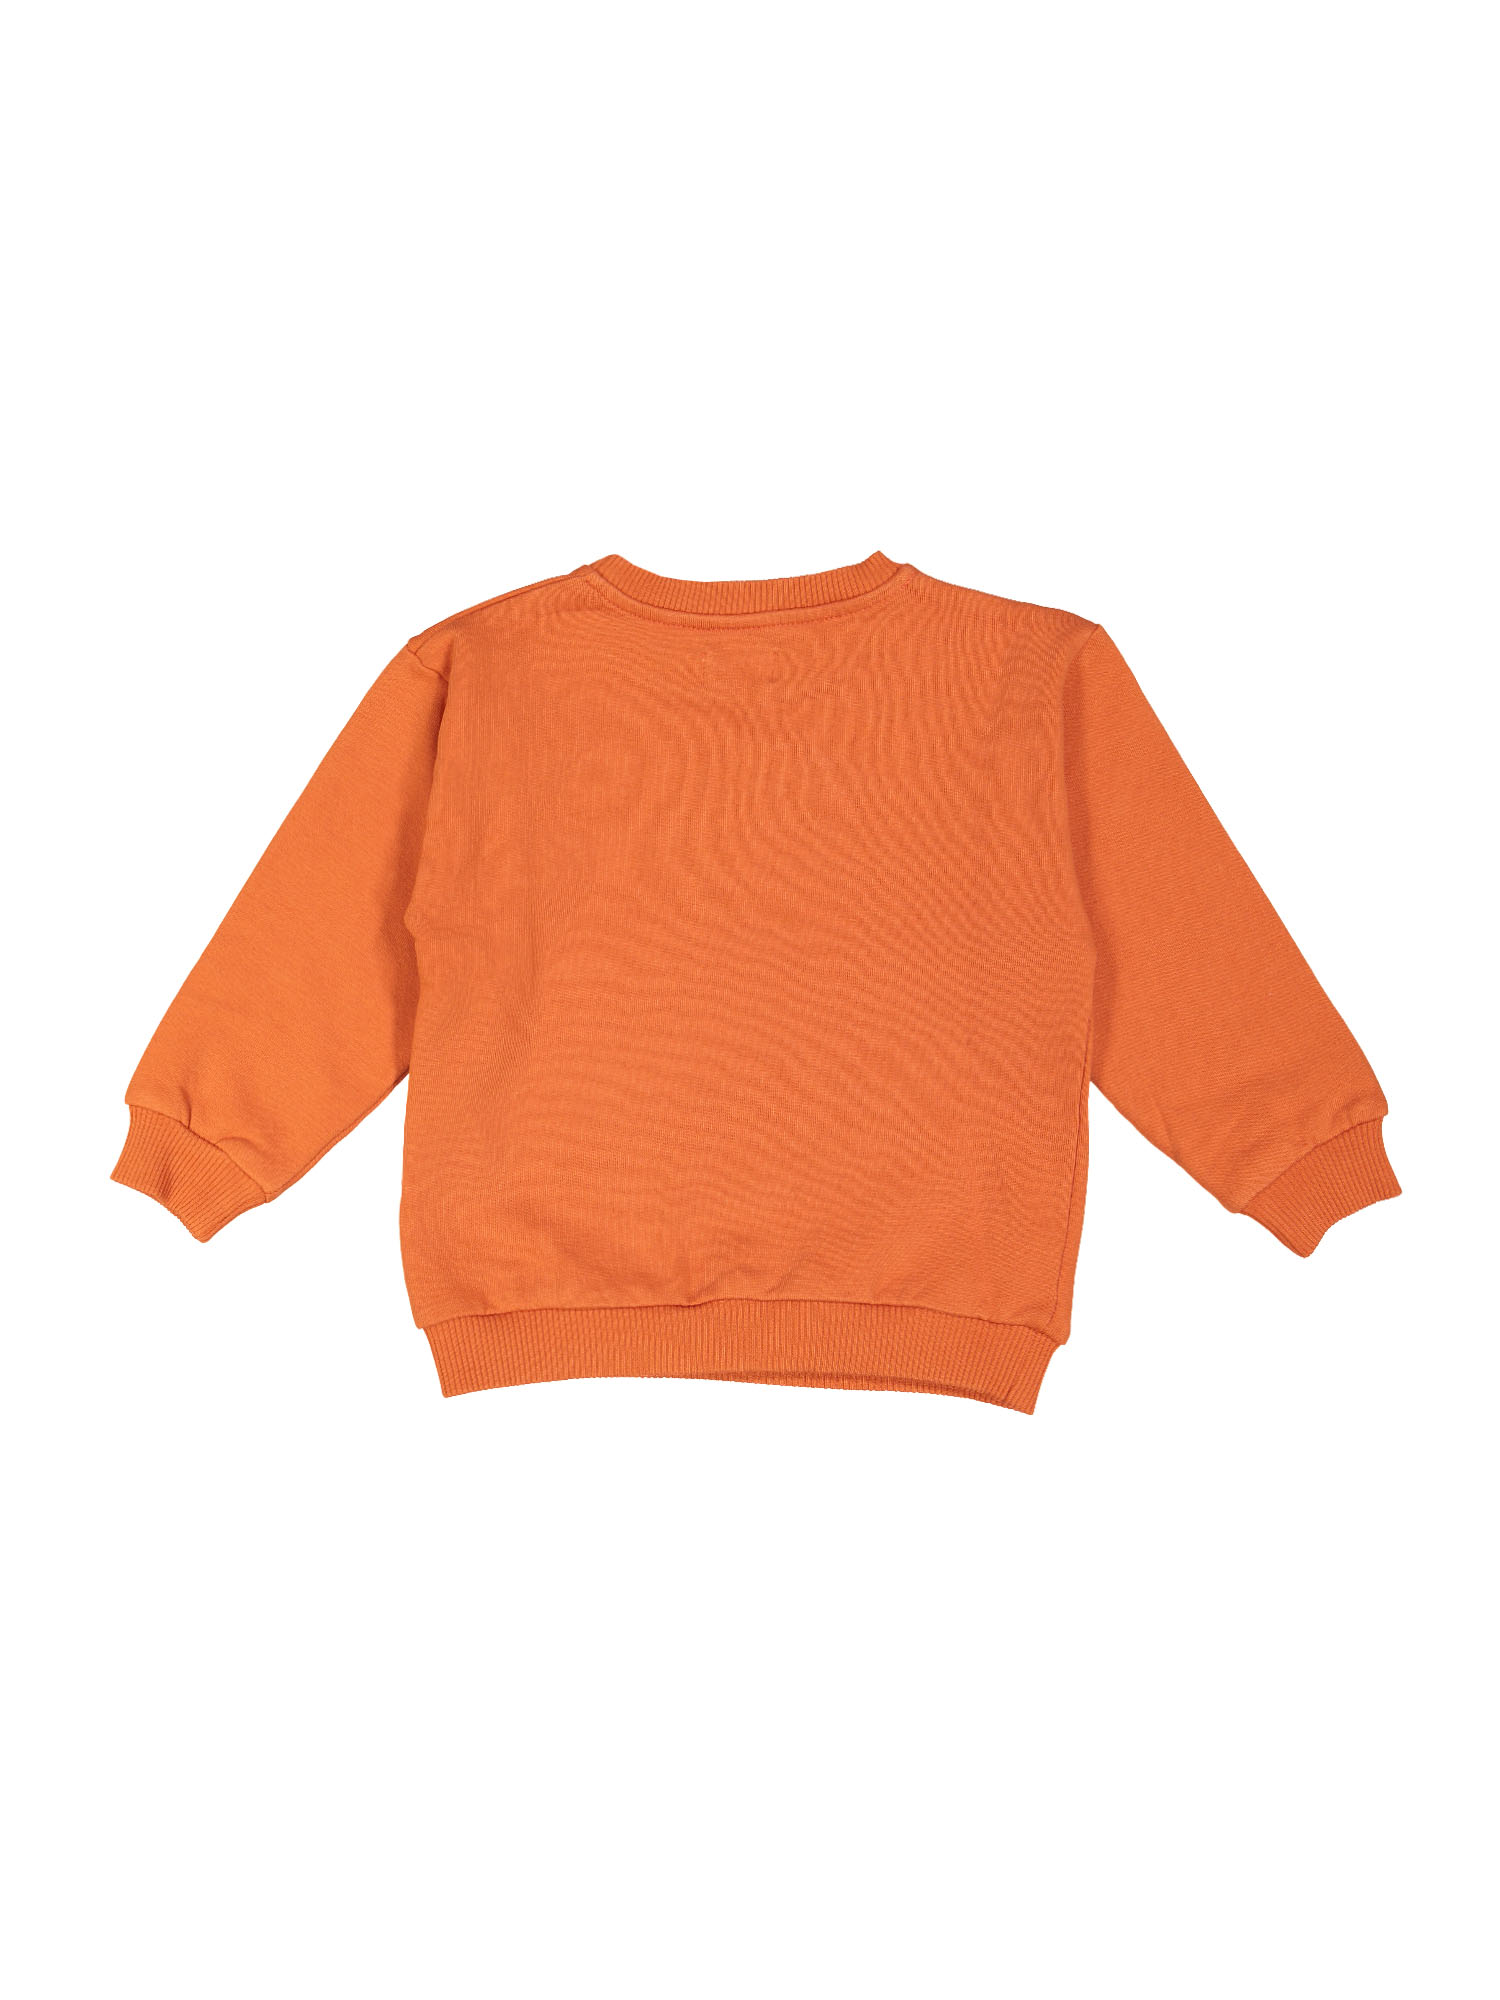 sweater boogie woogie oranje 09j